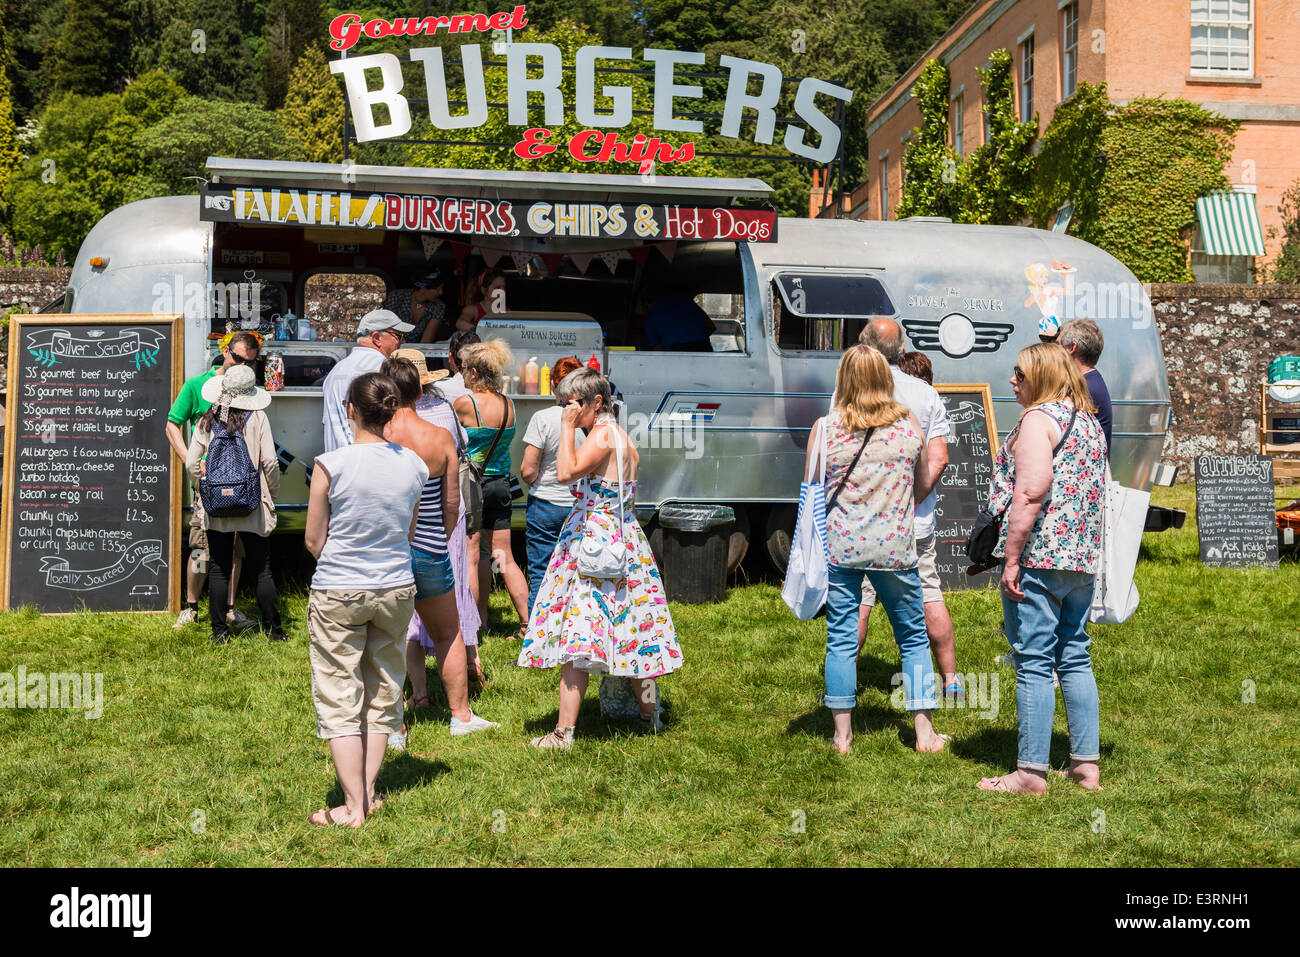 East Devon, 21 giugno 2014. Una festa in giardino e Fete ha un convertito American caravan Burger Bar in loco per rinfreschi. Foto Stock